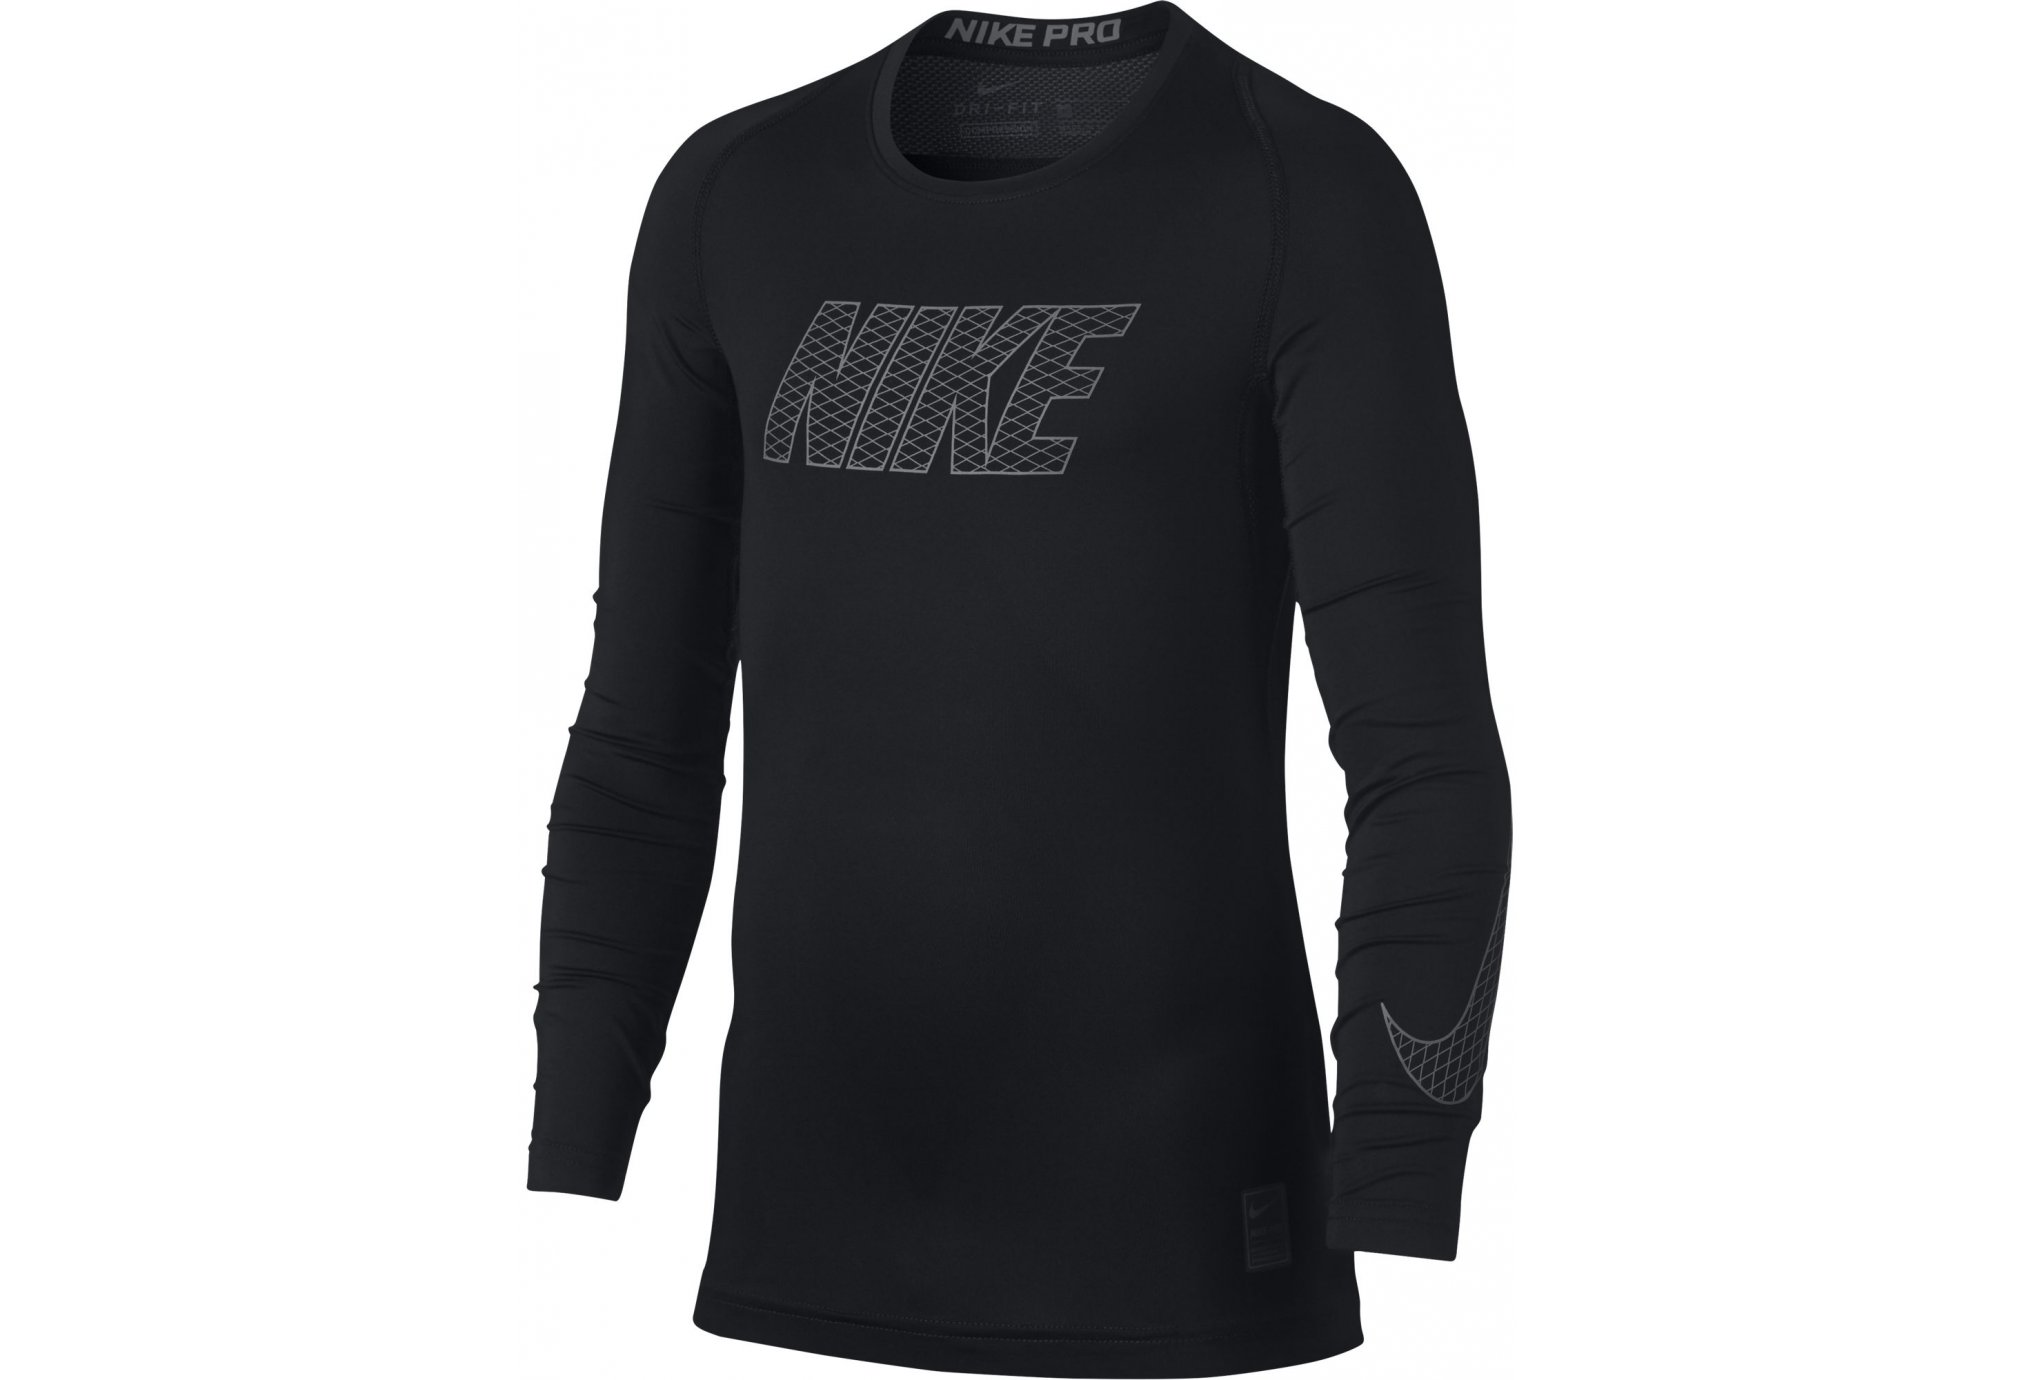 Nike Pro junior vêtement running homme